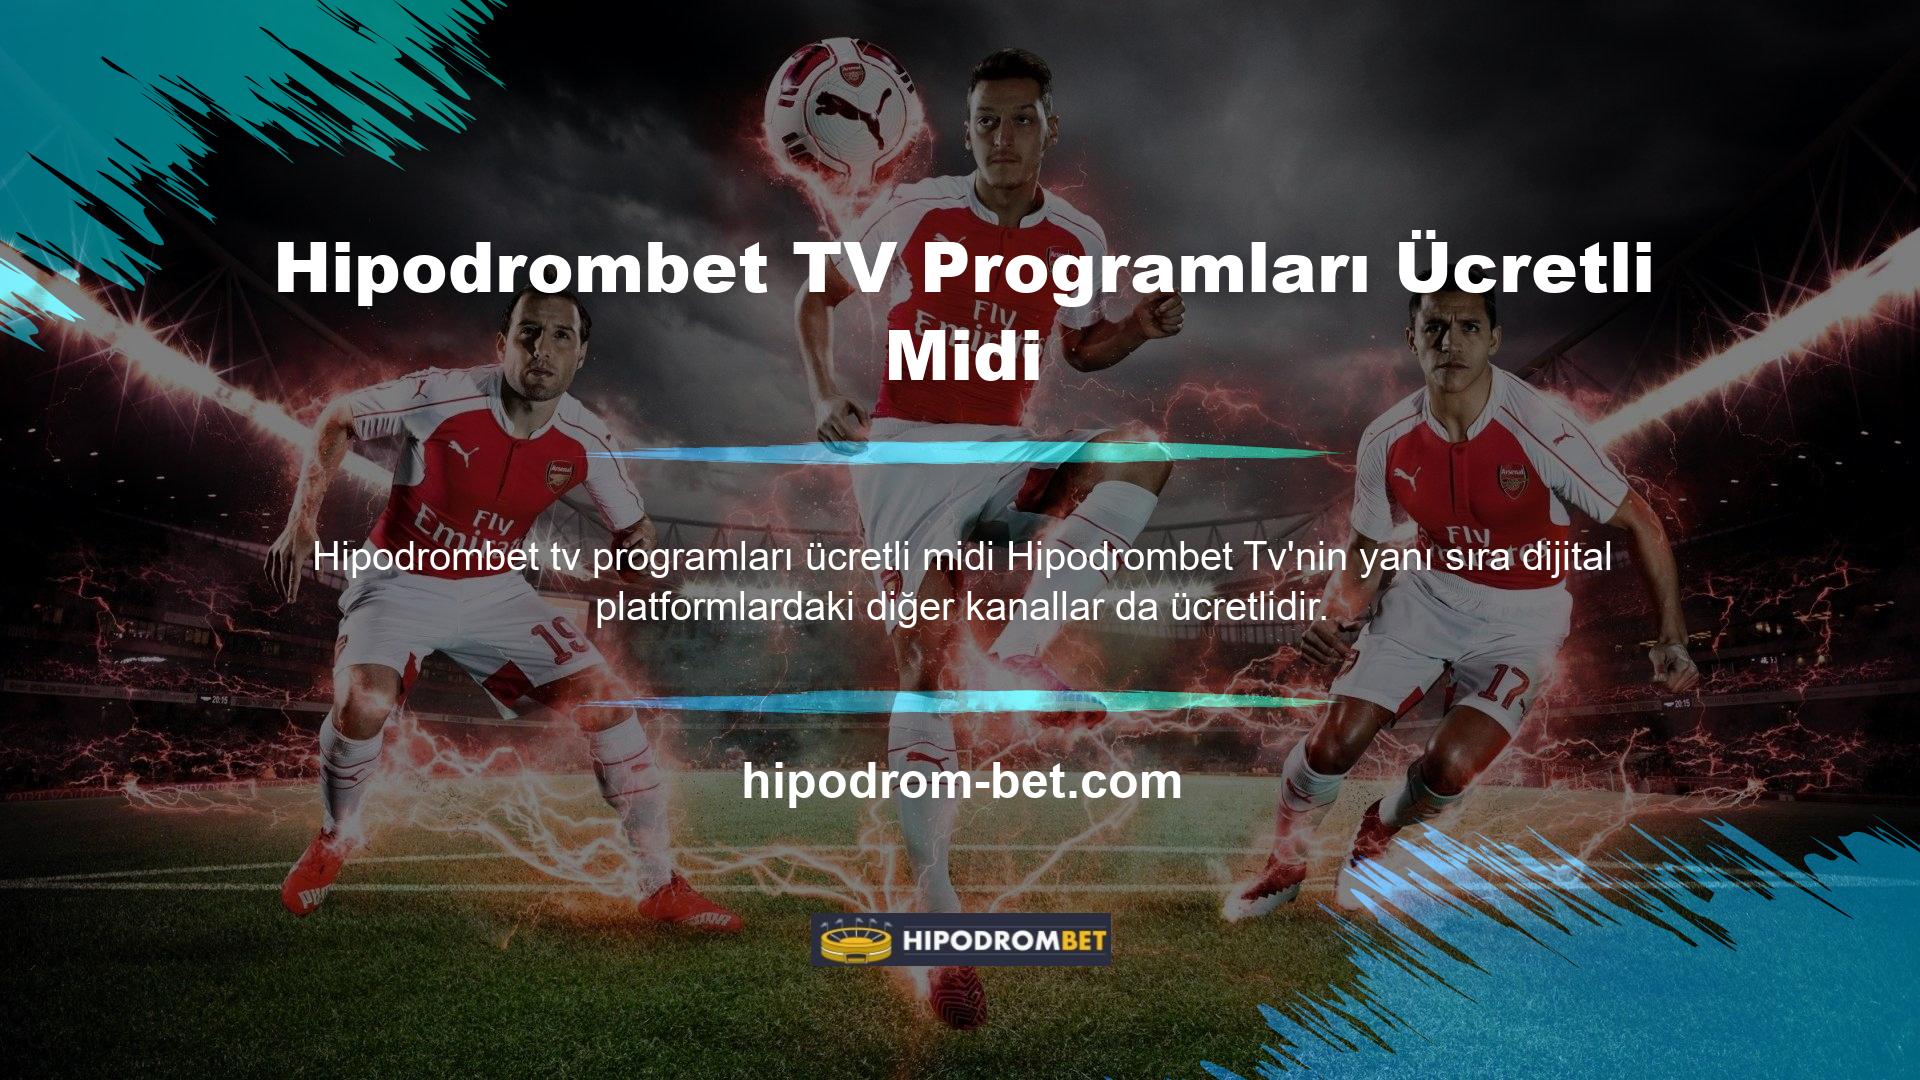 Hipodrombet TV ücretsiz olarak yayınlanmaktadır